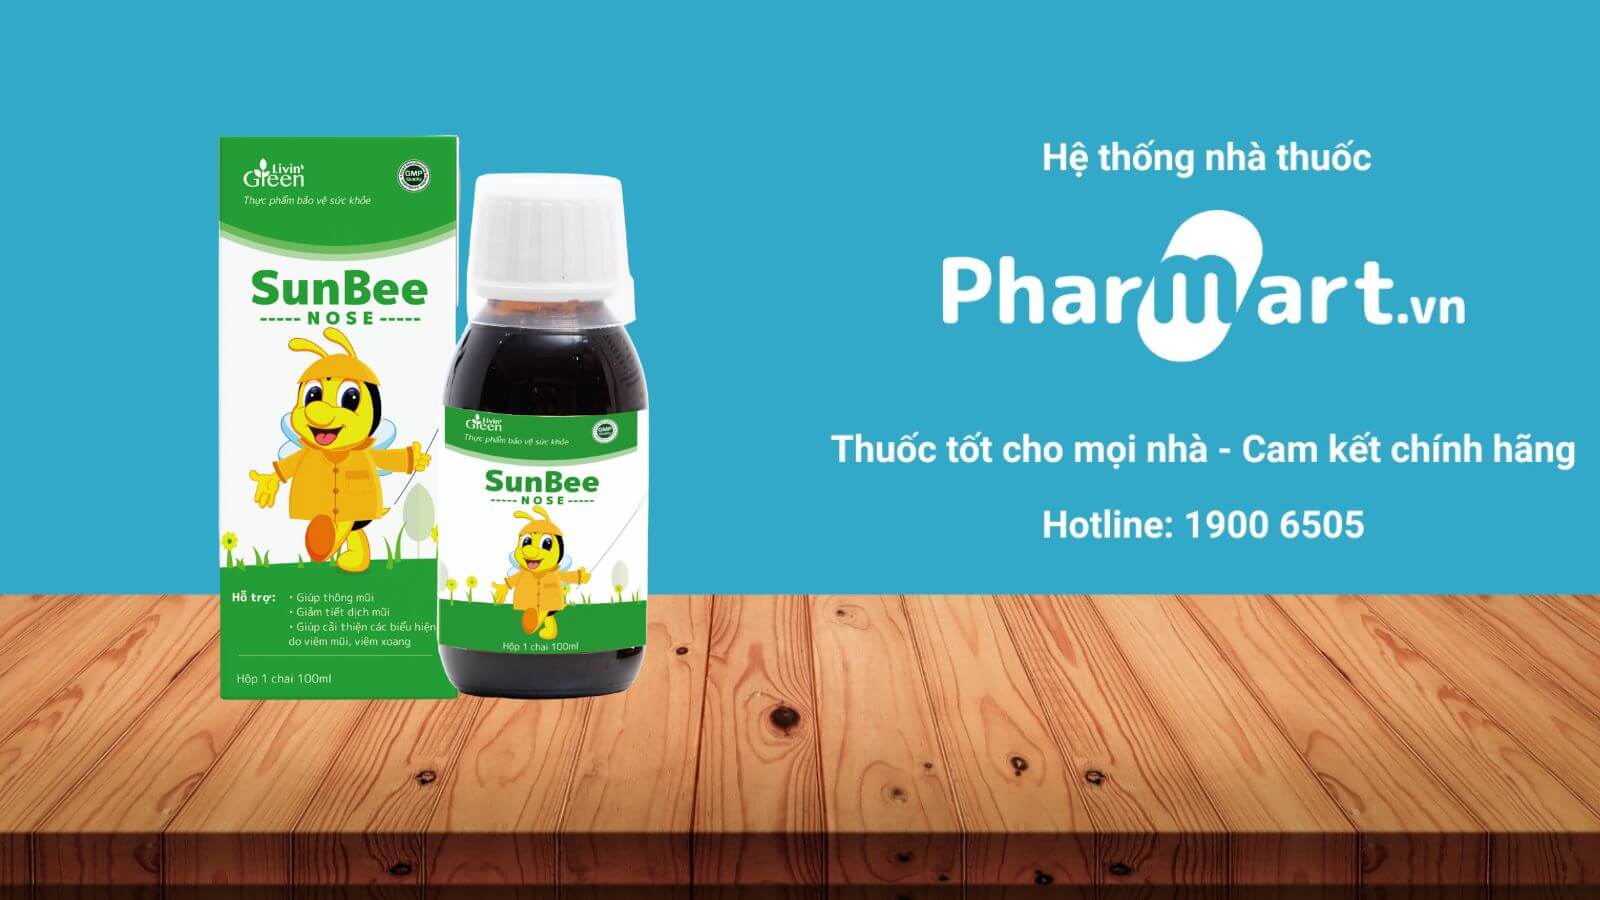 Mua SunBee Nose chính hãng tại Pharmart.vn